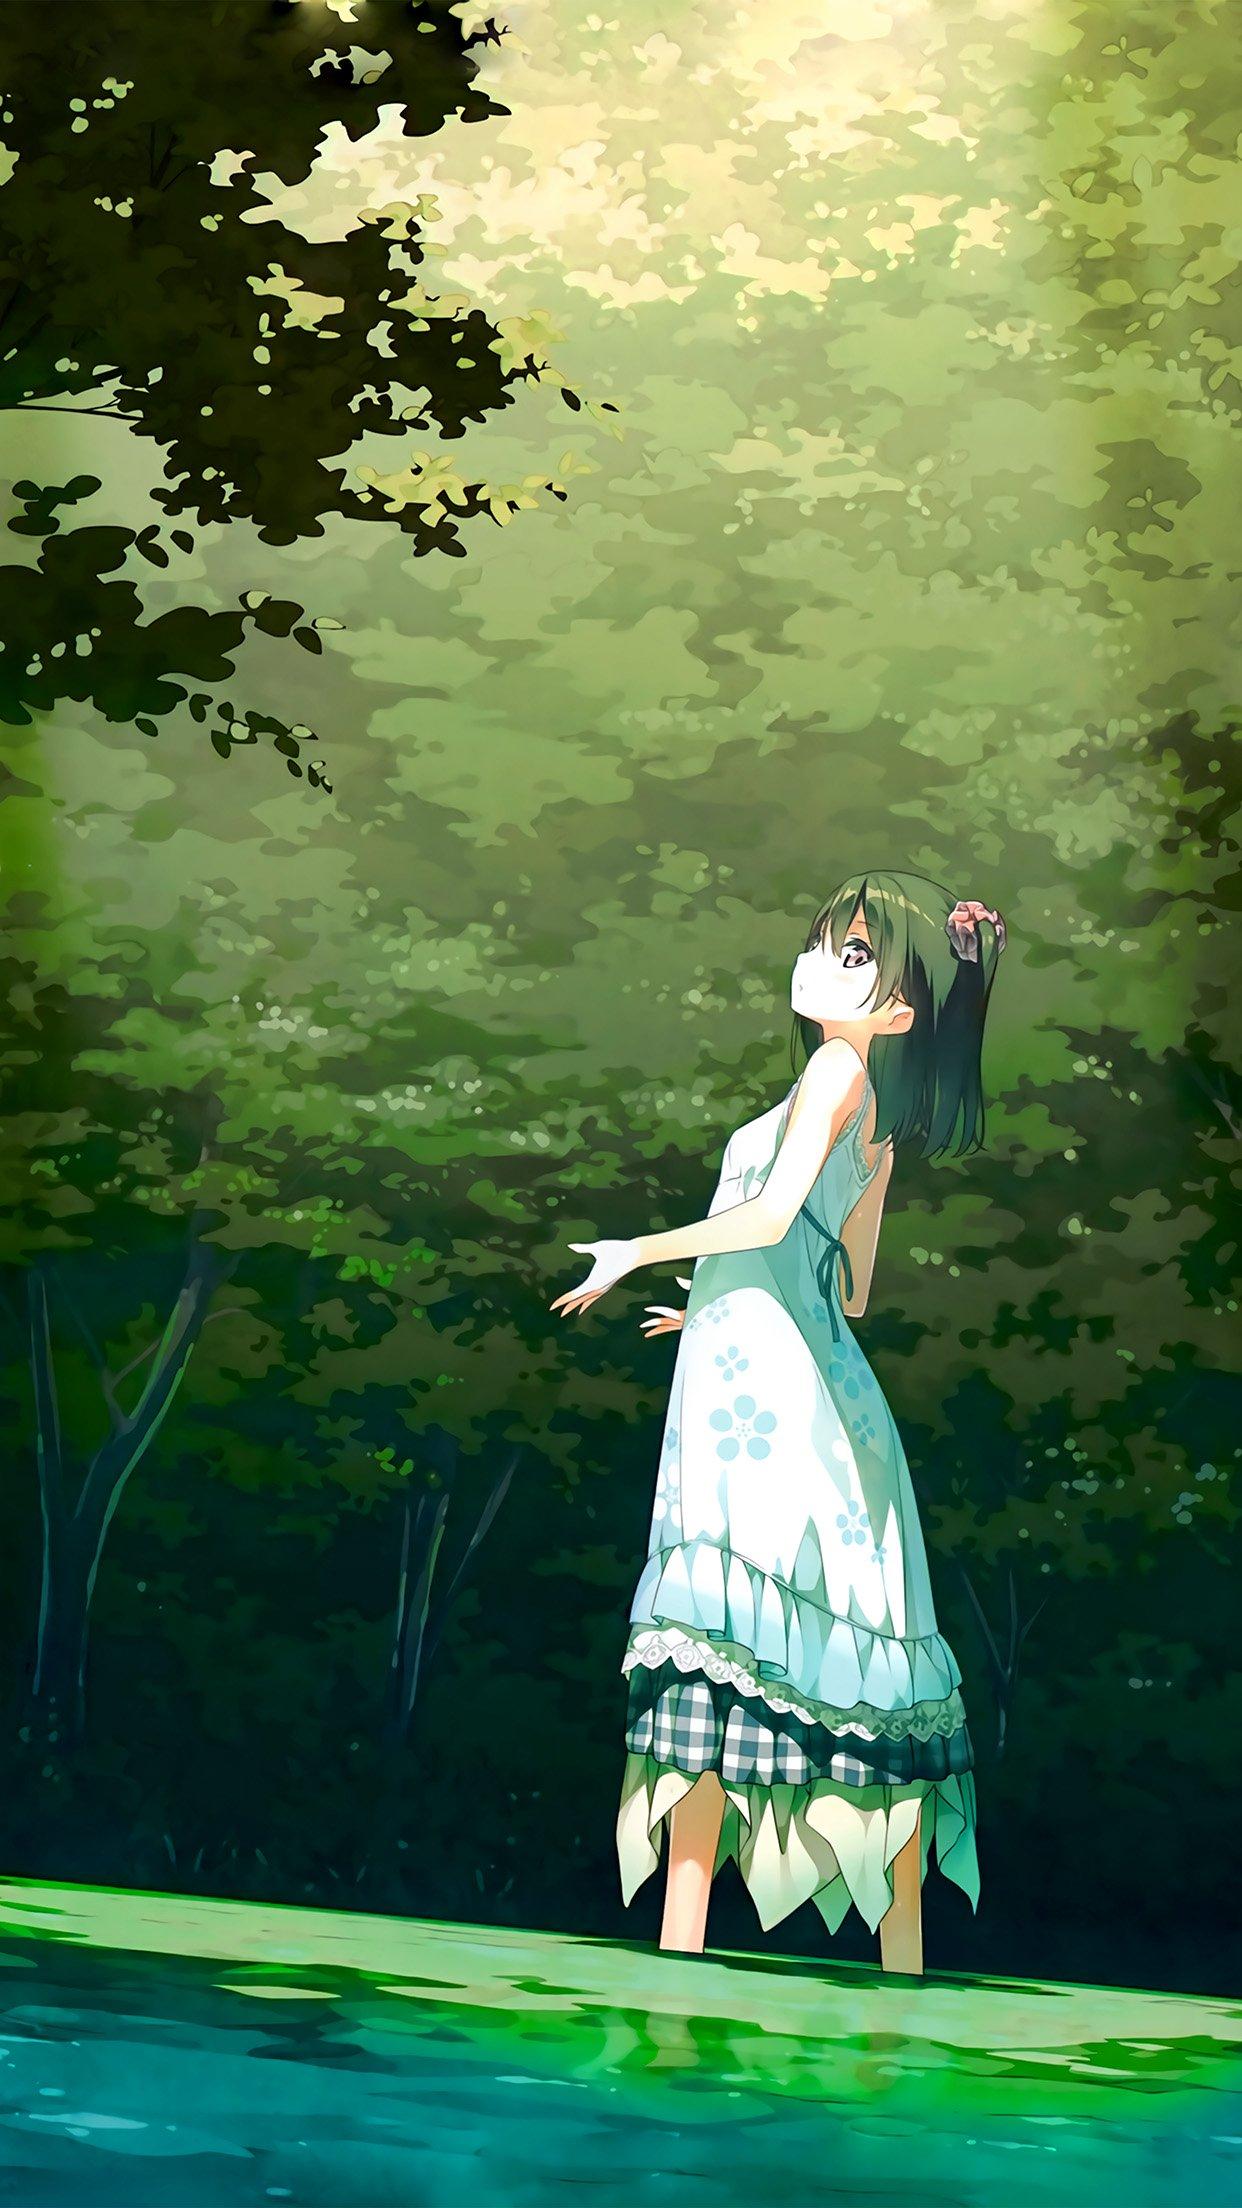 iPhone X wallpaper. anime girl green art illustration